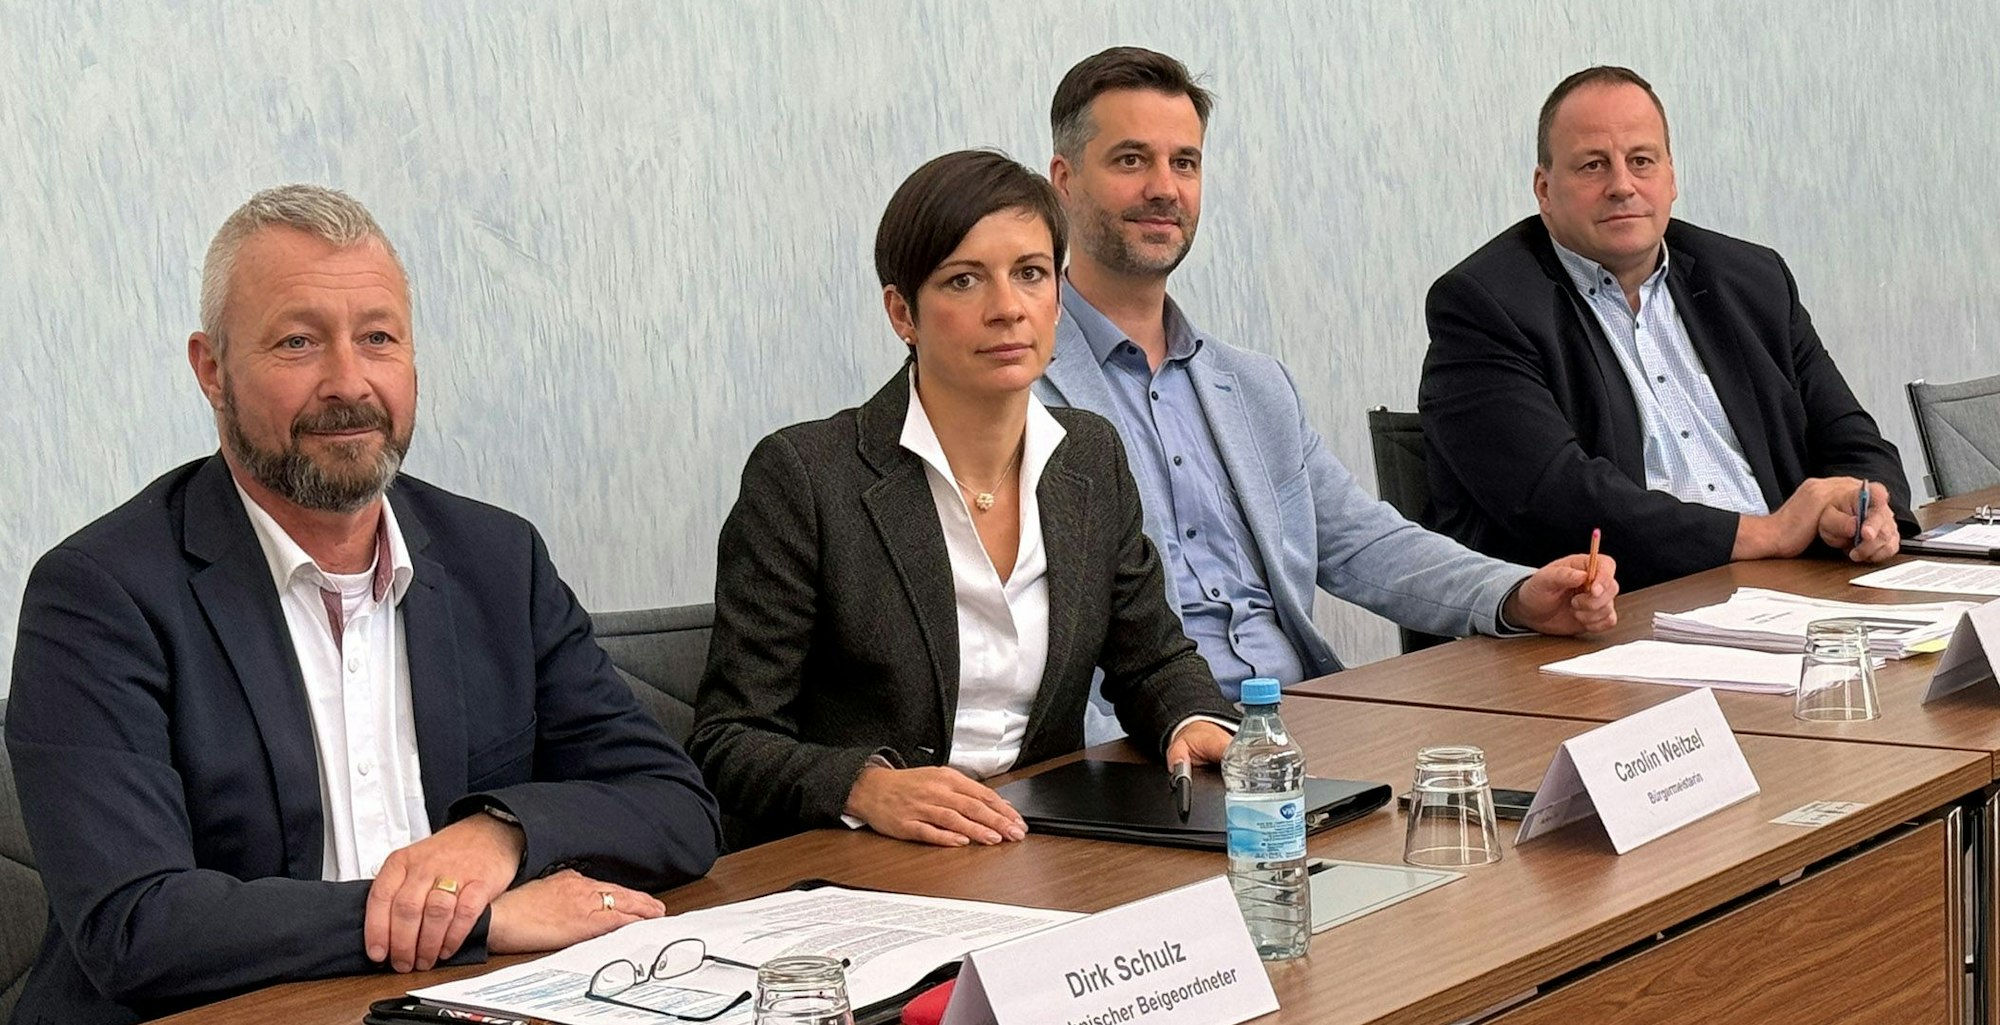 Auf dem Foto sind Erftstadts Bürgermeisterin Carolin Weitzel und drei ihrer Kollegen aus dem Verwaltungsvorstand zu sehen.